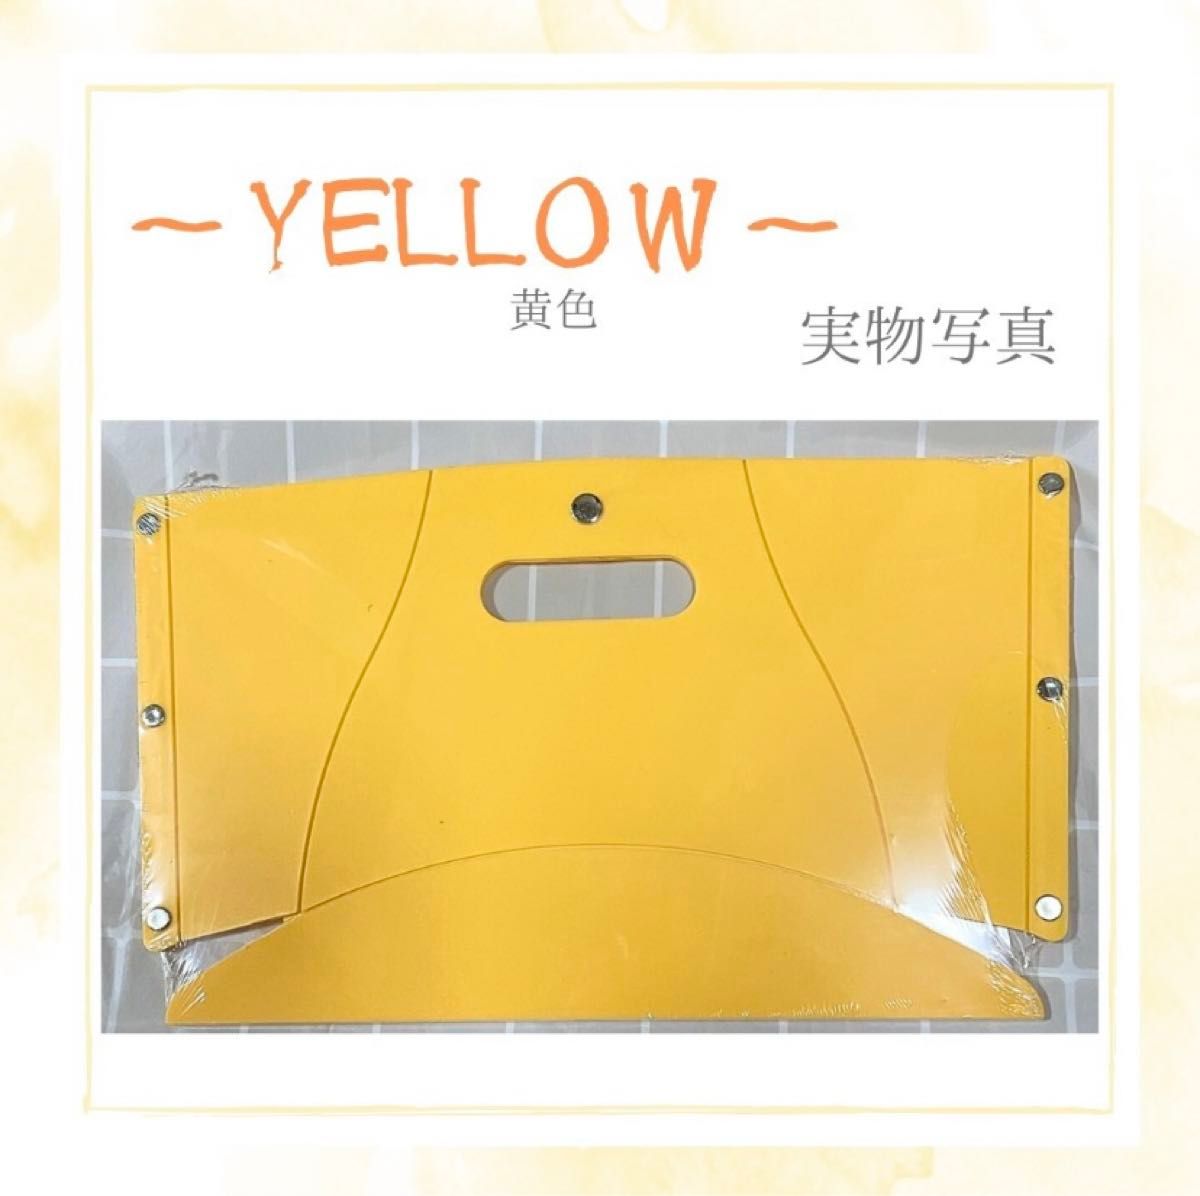 折りたたみ椅子 黄色 コンパクト 持ち運び 野外 超軽量 手提げバッグ 簡単収納 お出かけ イベント キャンプ 釣り 運動会